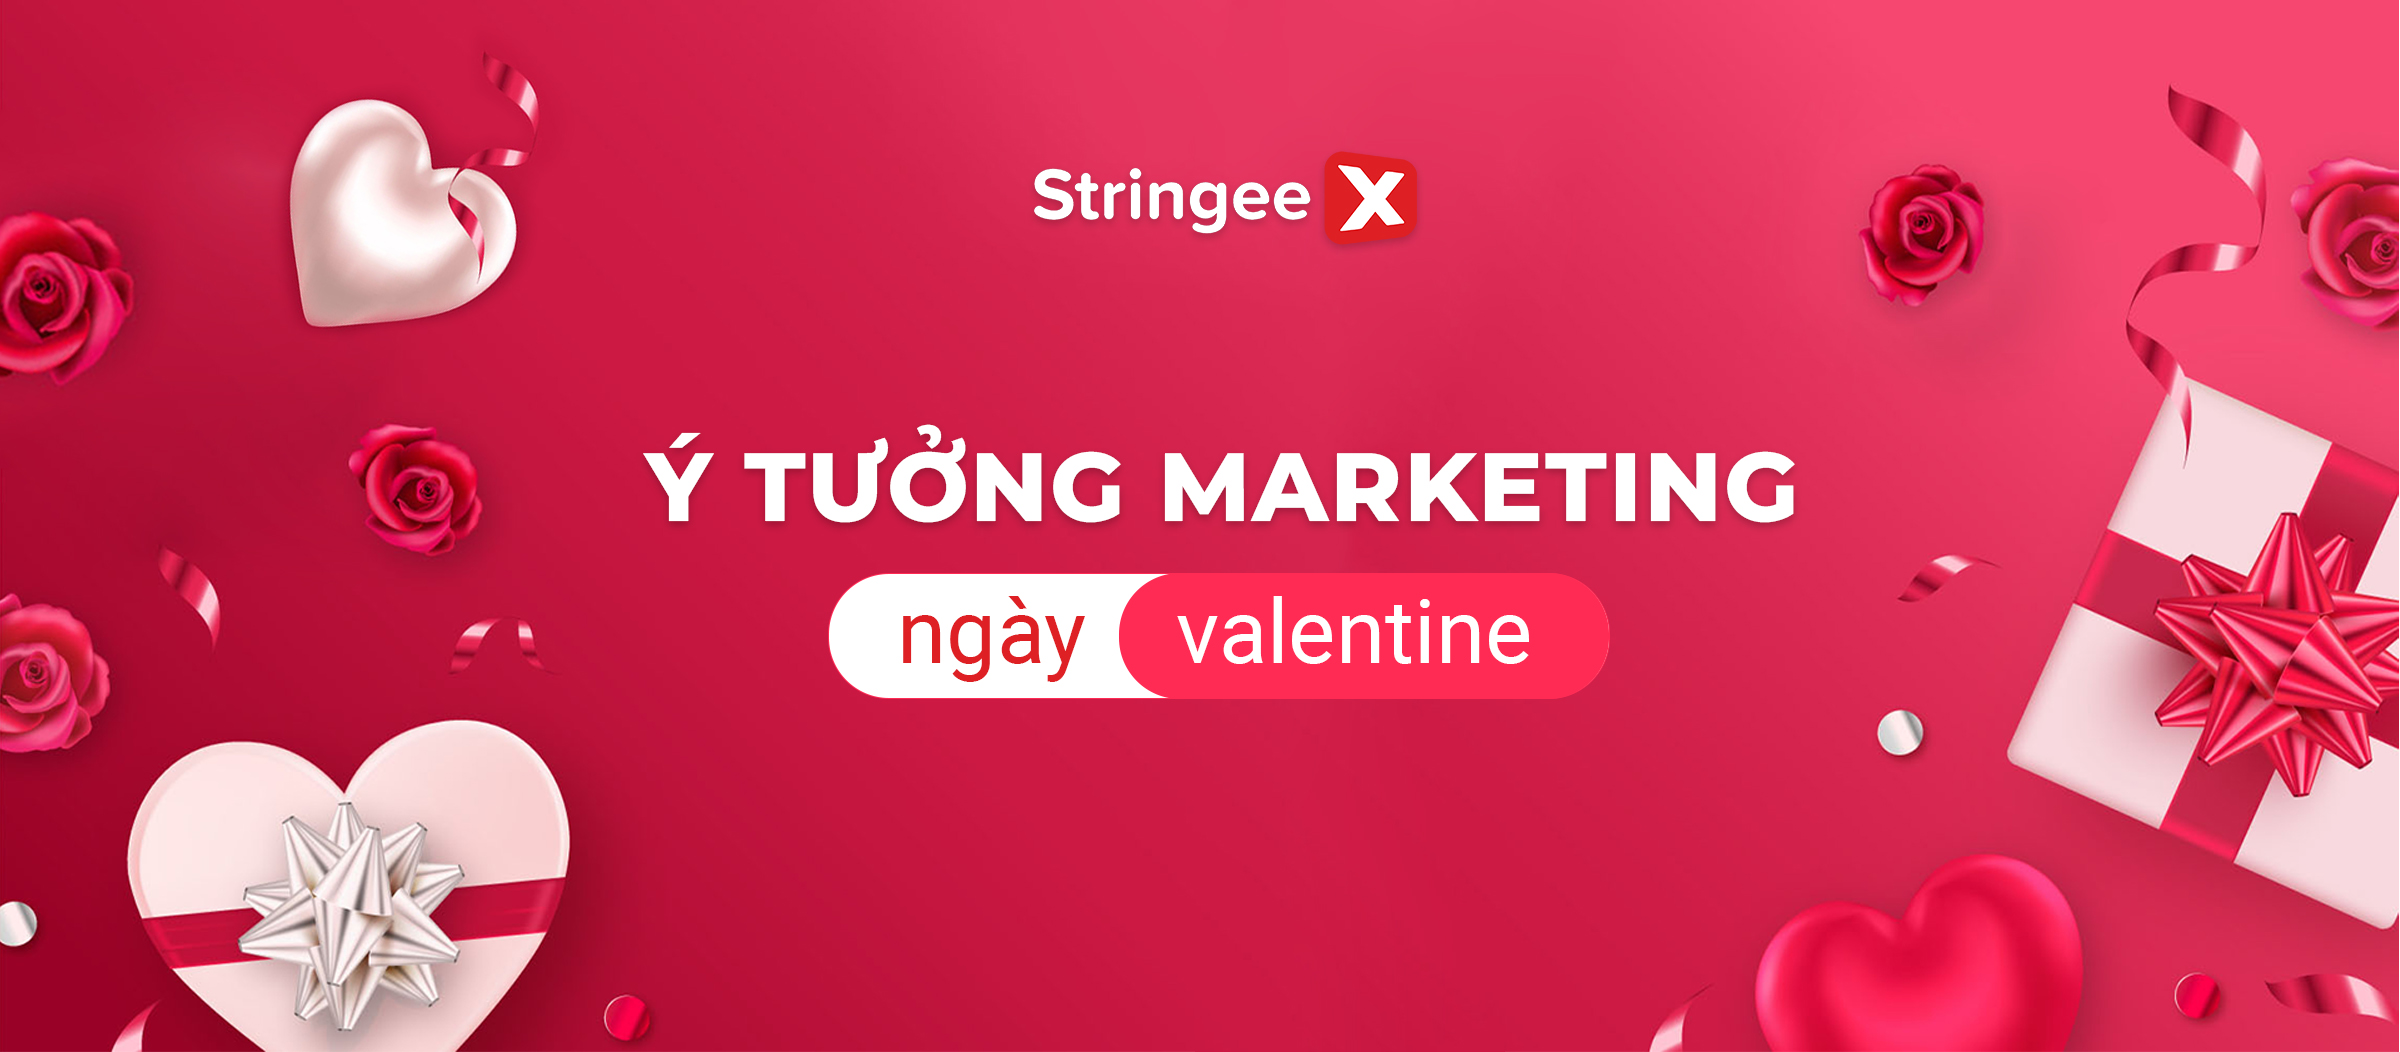 Top 05 ý tưởng Marketing ngày Valentine giúp thu hút khách hàng hiệu quả